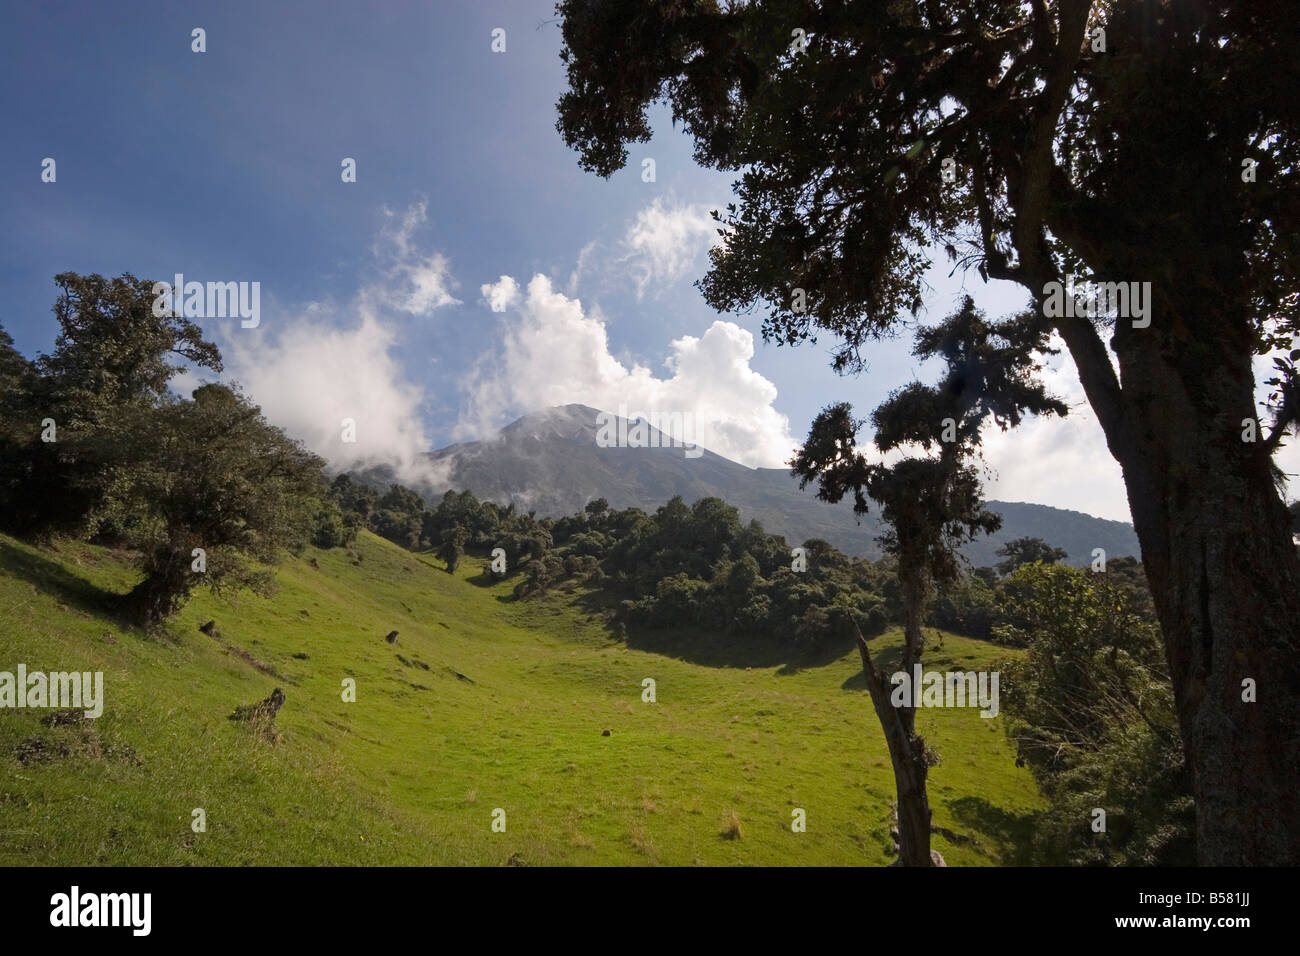 El humo sube desde el cráter activo del volcán Tungurahua que amenace a la cercana ciudad de Baños, provincia de Ambato, Ecuador Foto de stock